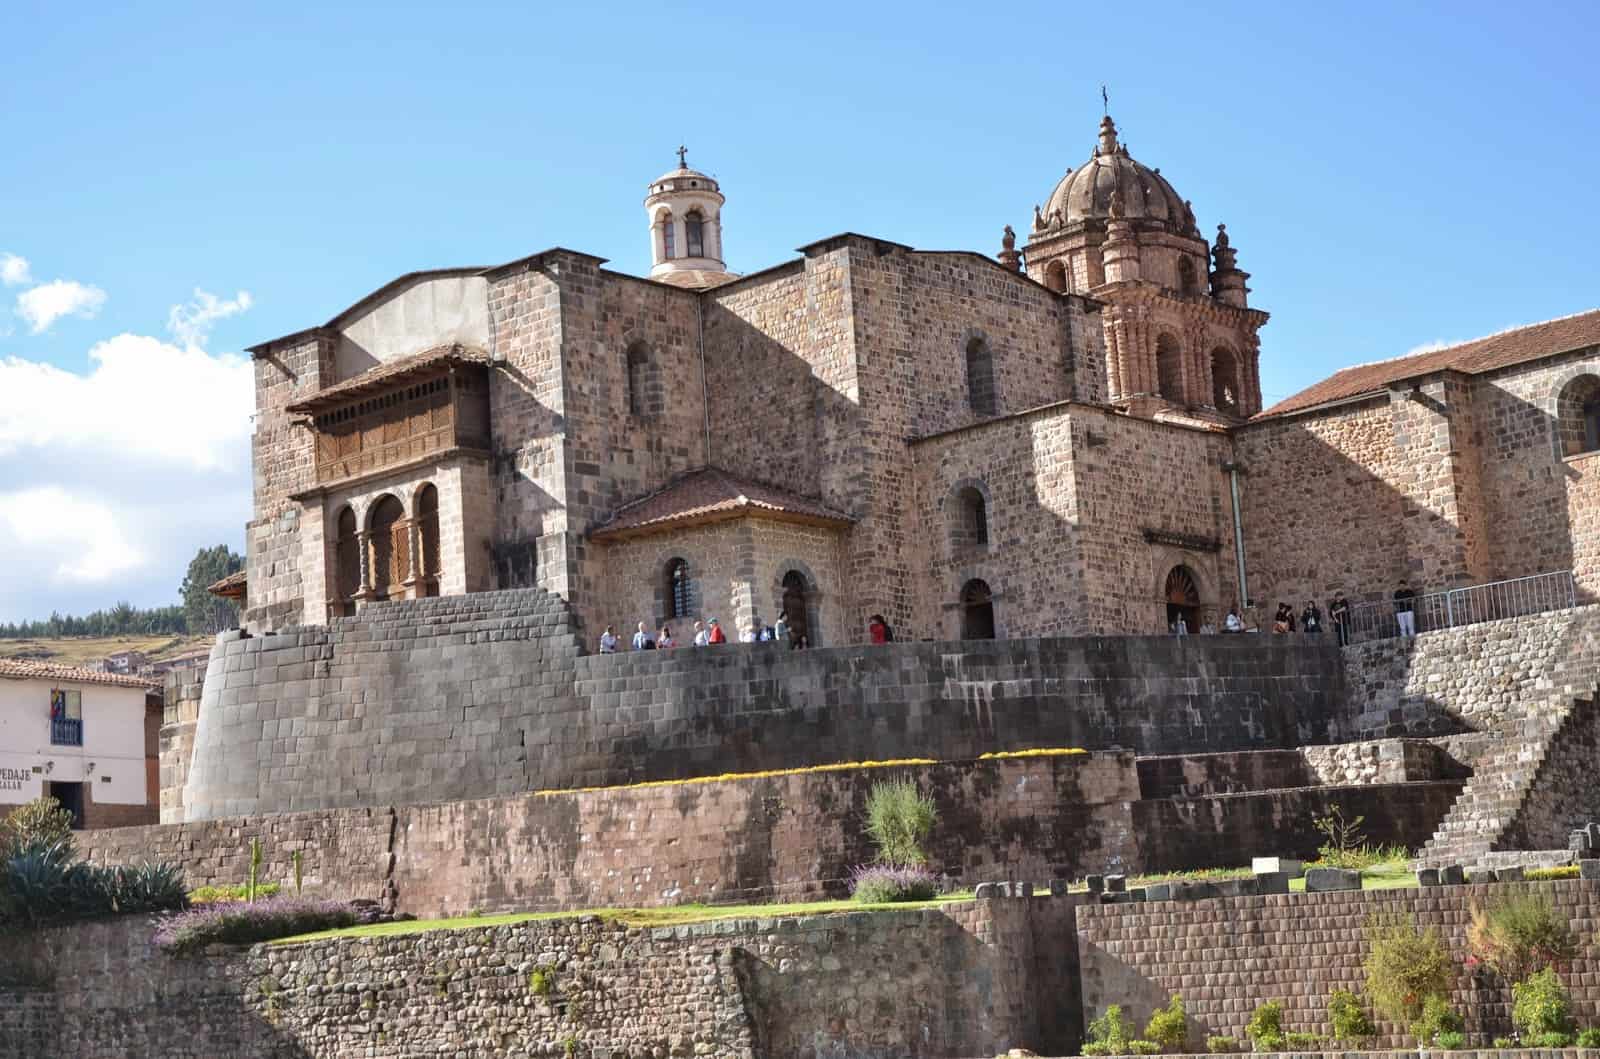 Qorikancha and Iglesia de Santo Domingo in Cusco, Peru